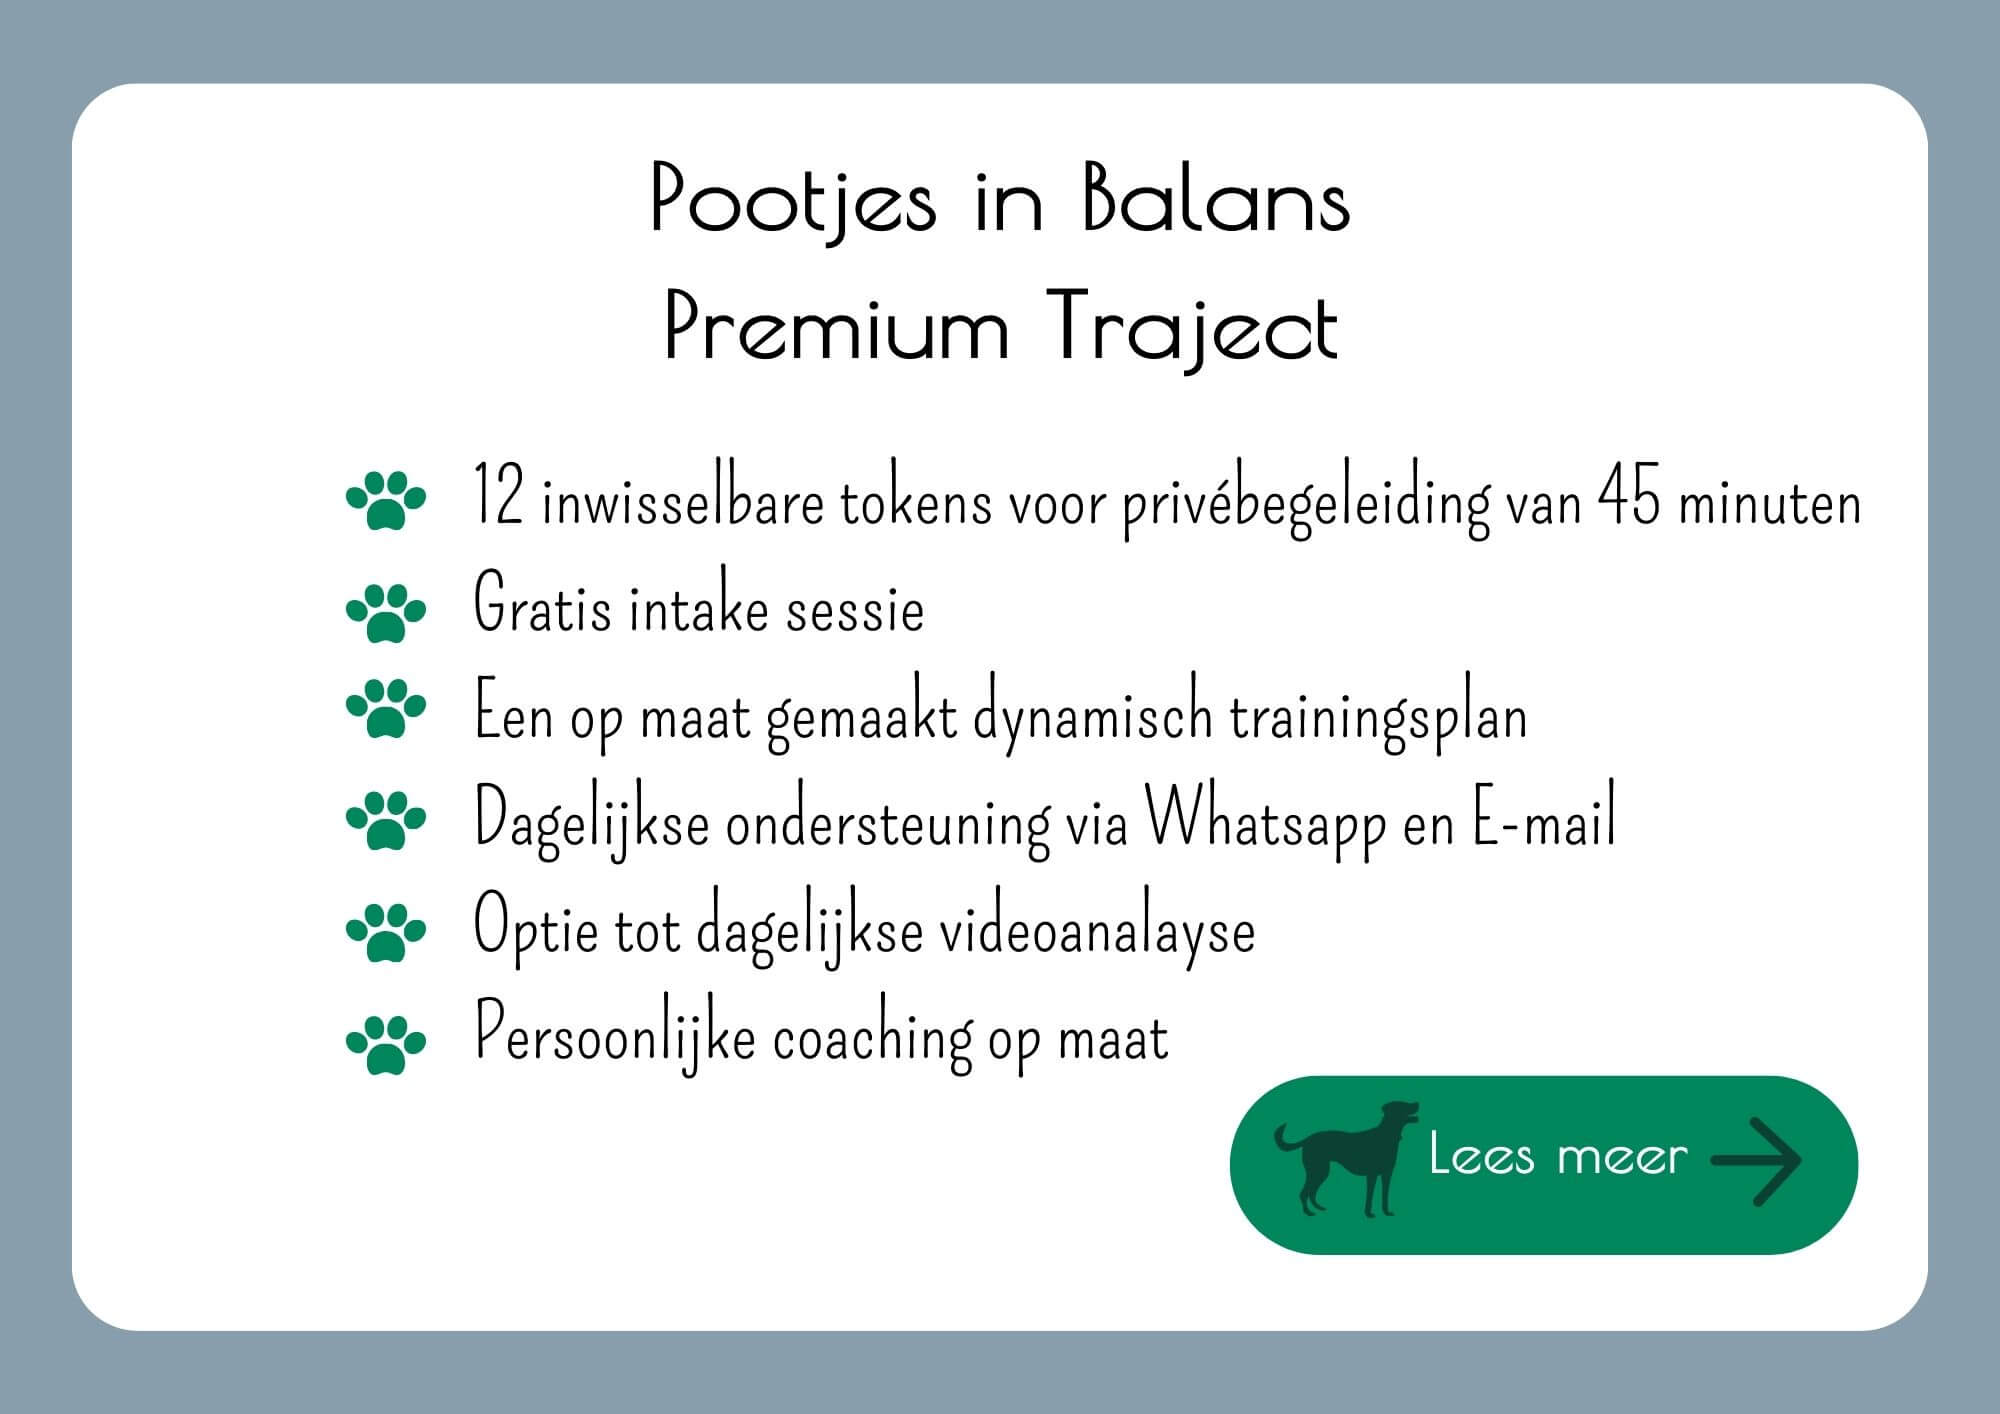 Pootjes in Balans Premium traject, eerste kennismaking met een honden gedragstraject speciaal voor reactieve honden